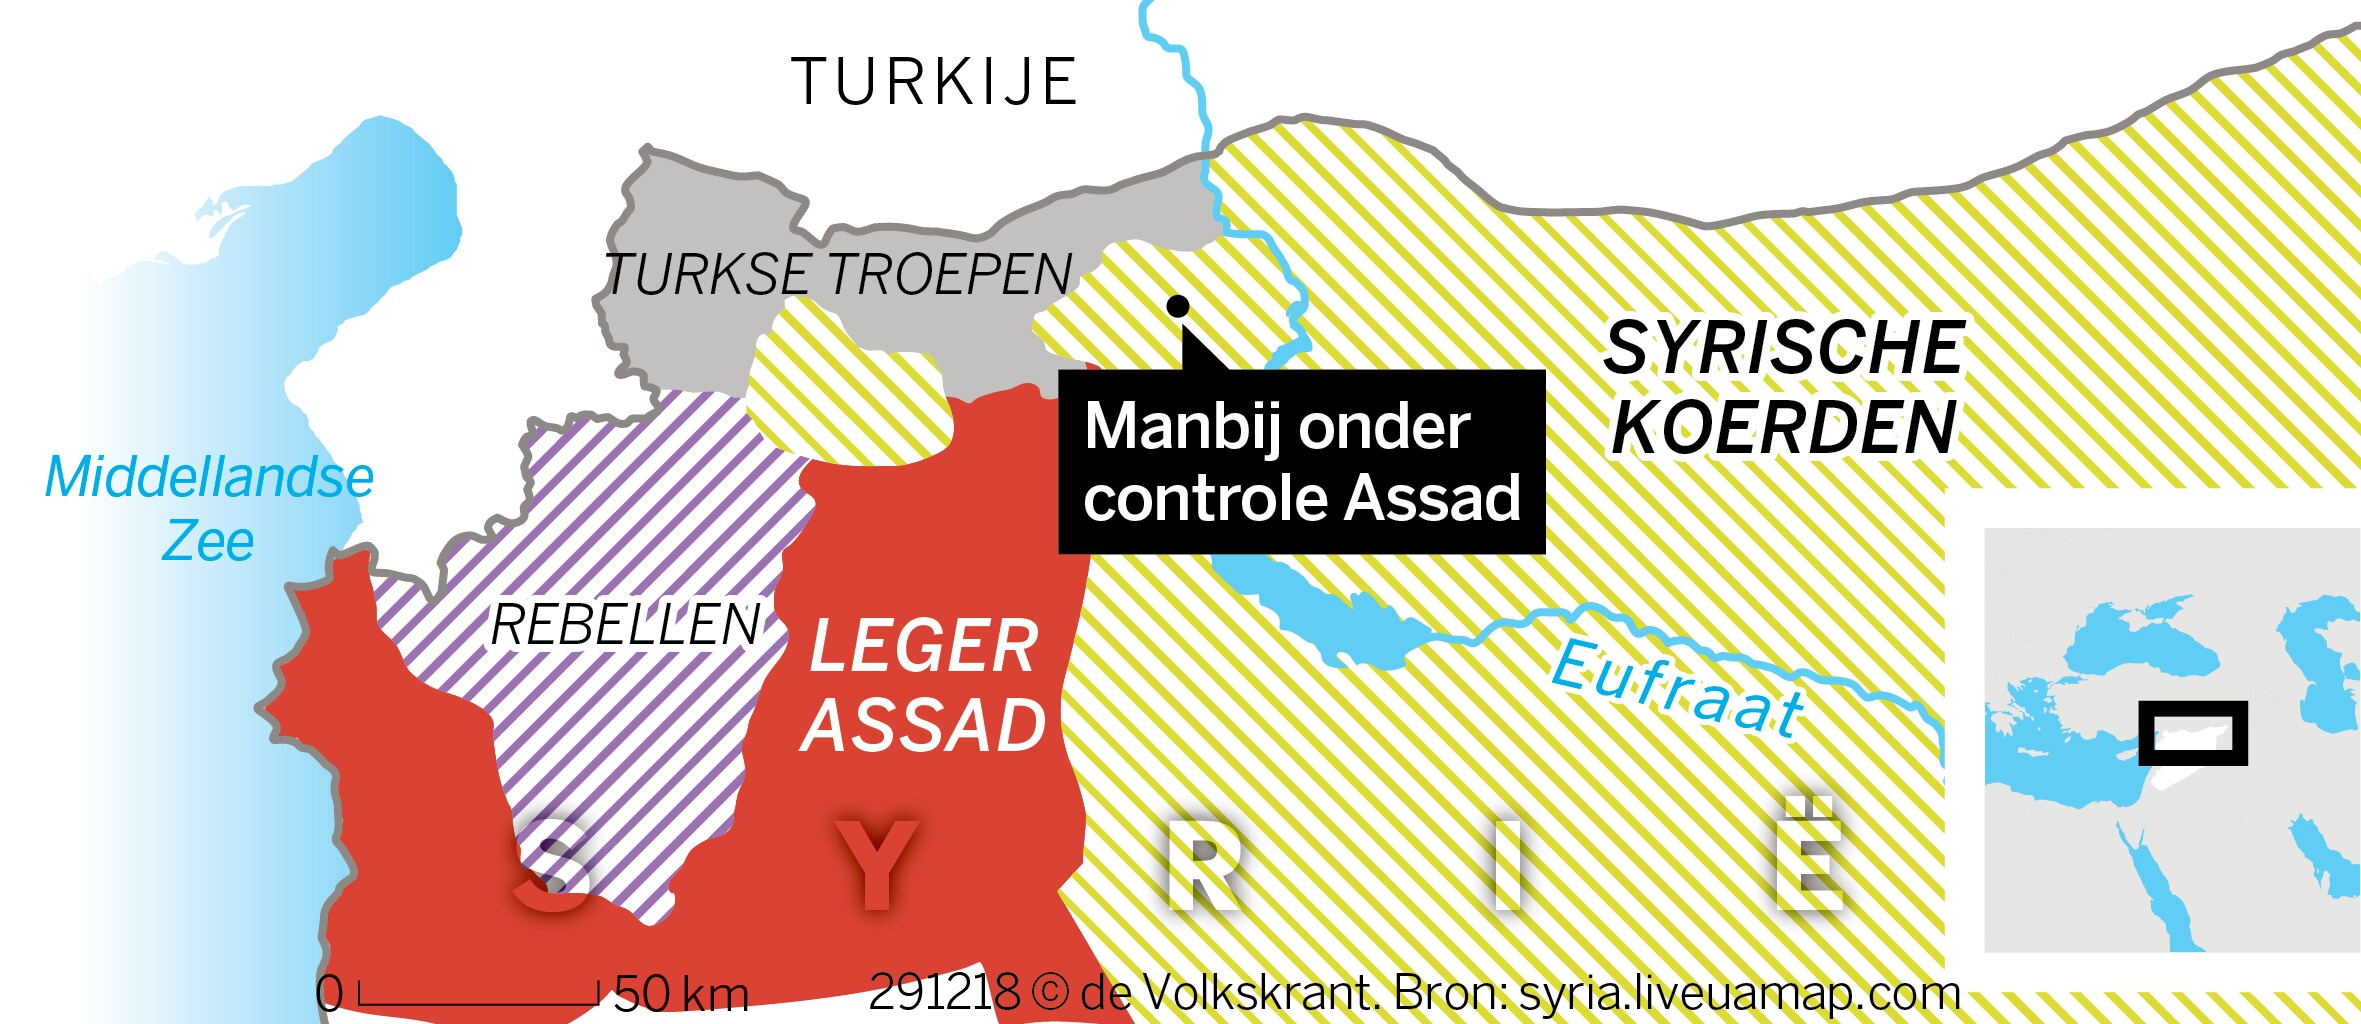 Syrisch regeringsleger wendt Turkse militaire actie af bij Manbij